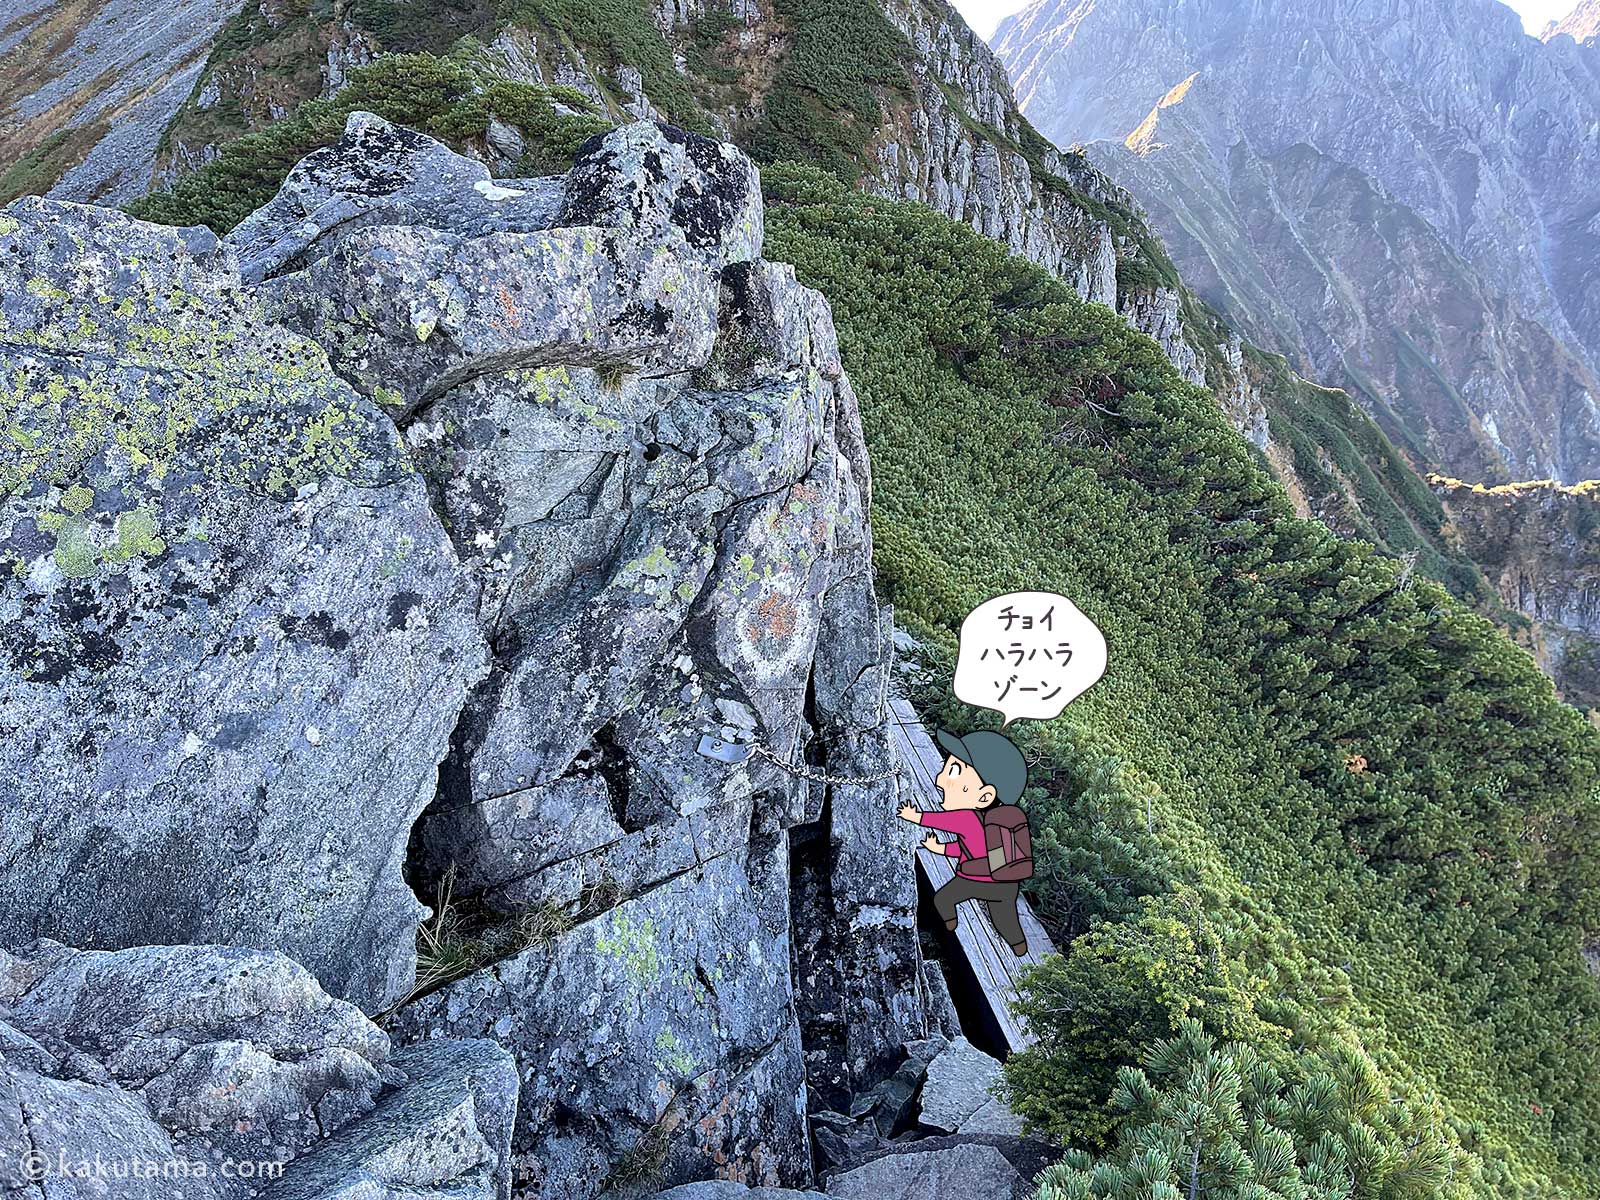 南岳新道の稜線と回り込む板の上を歩く写真と登山者のイラスト